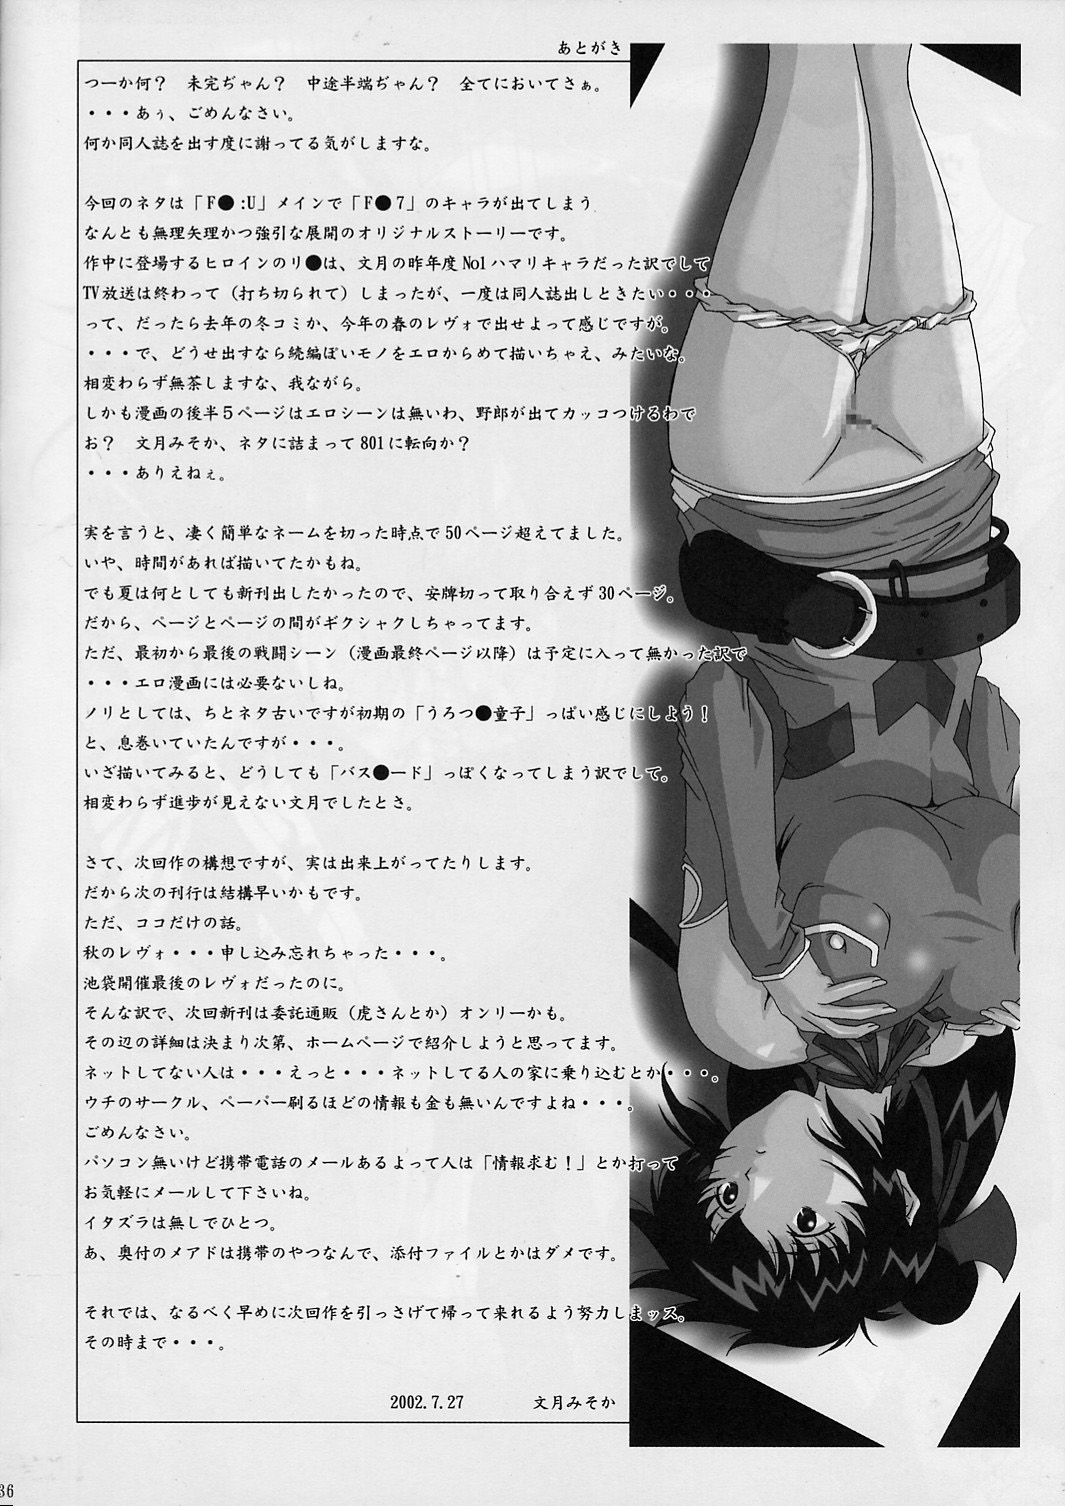 【黑条汉化&DDD】[るきるきEXISS (文月晦日)] FF嬲 2 (ファイナルファンタジーVII, FFU ～ファイナルファンタジーアンリミテッド～)